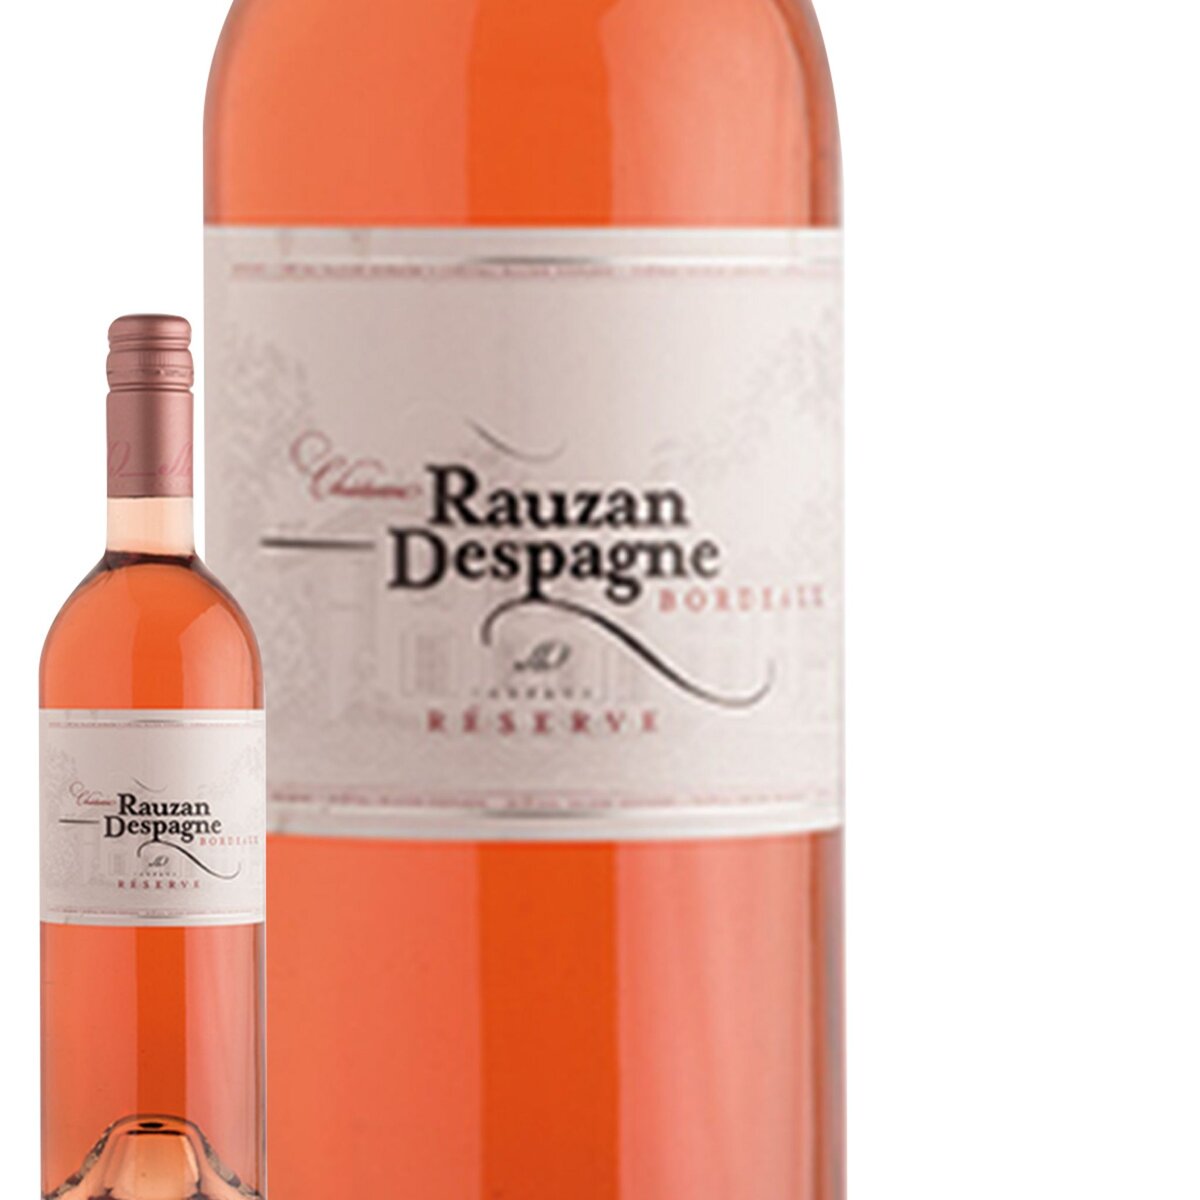 Château Rauzan Despagne Bordeaux Rosé 2015